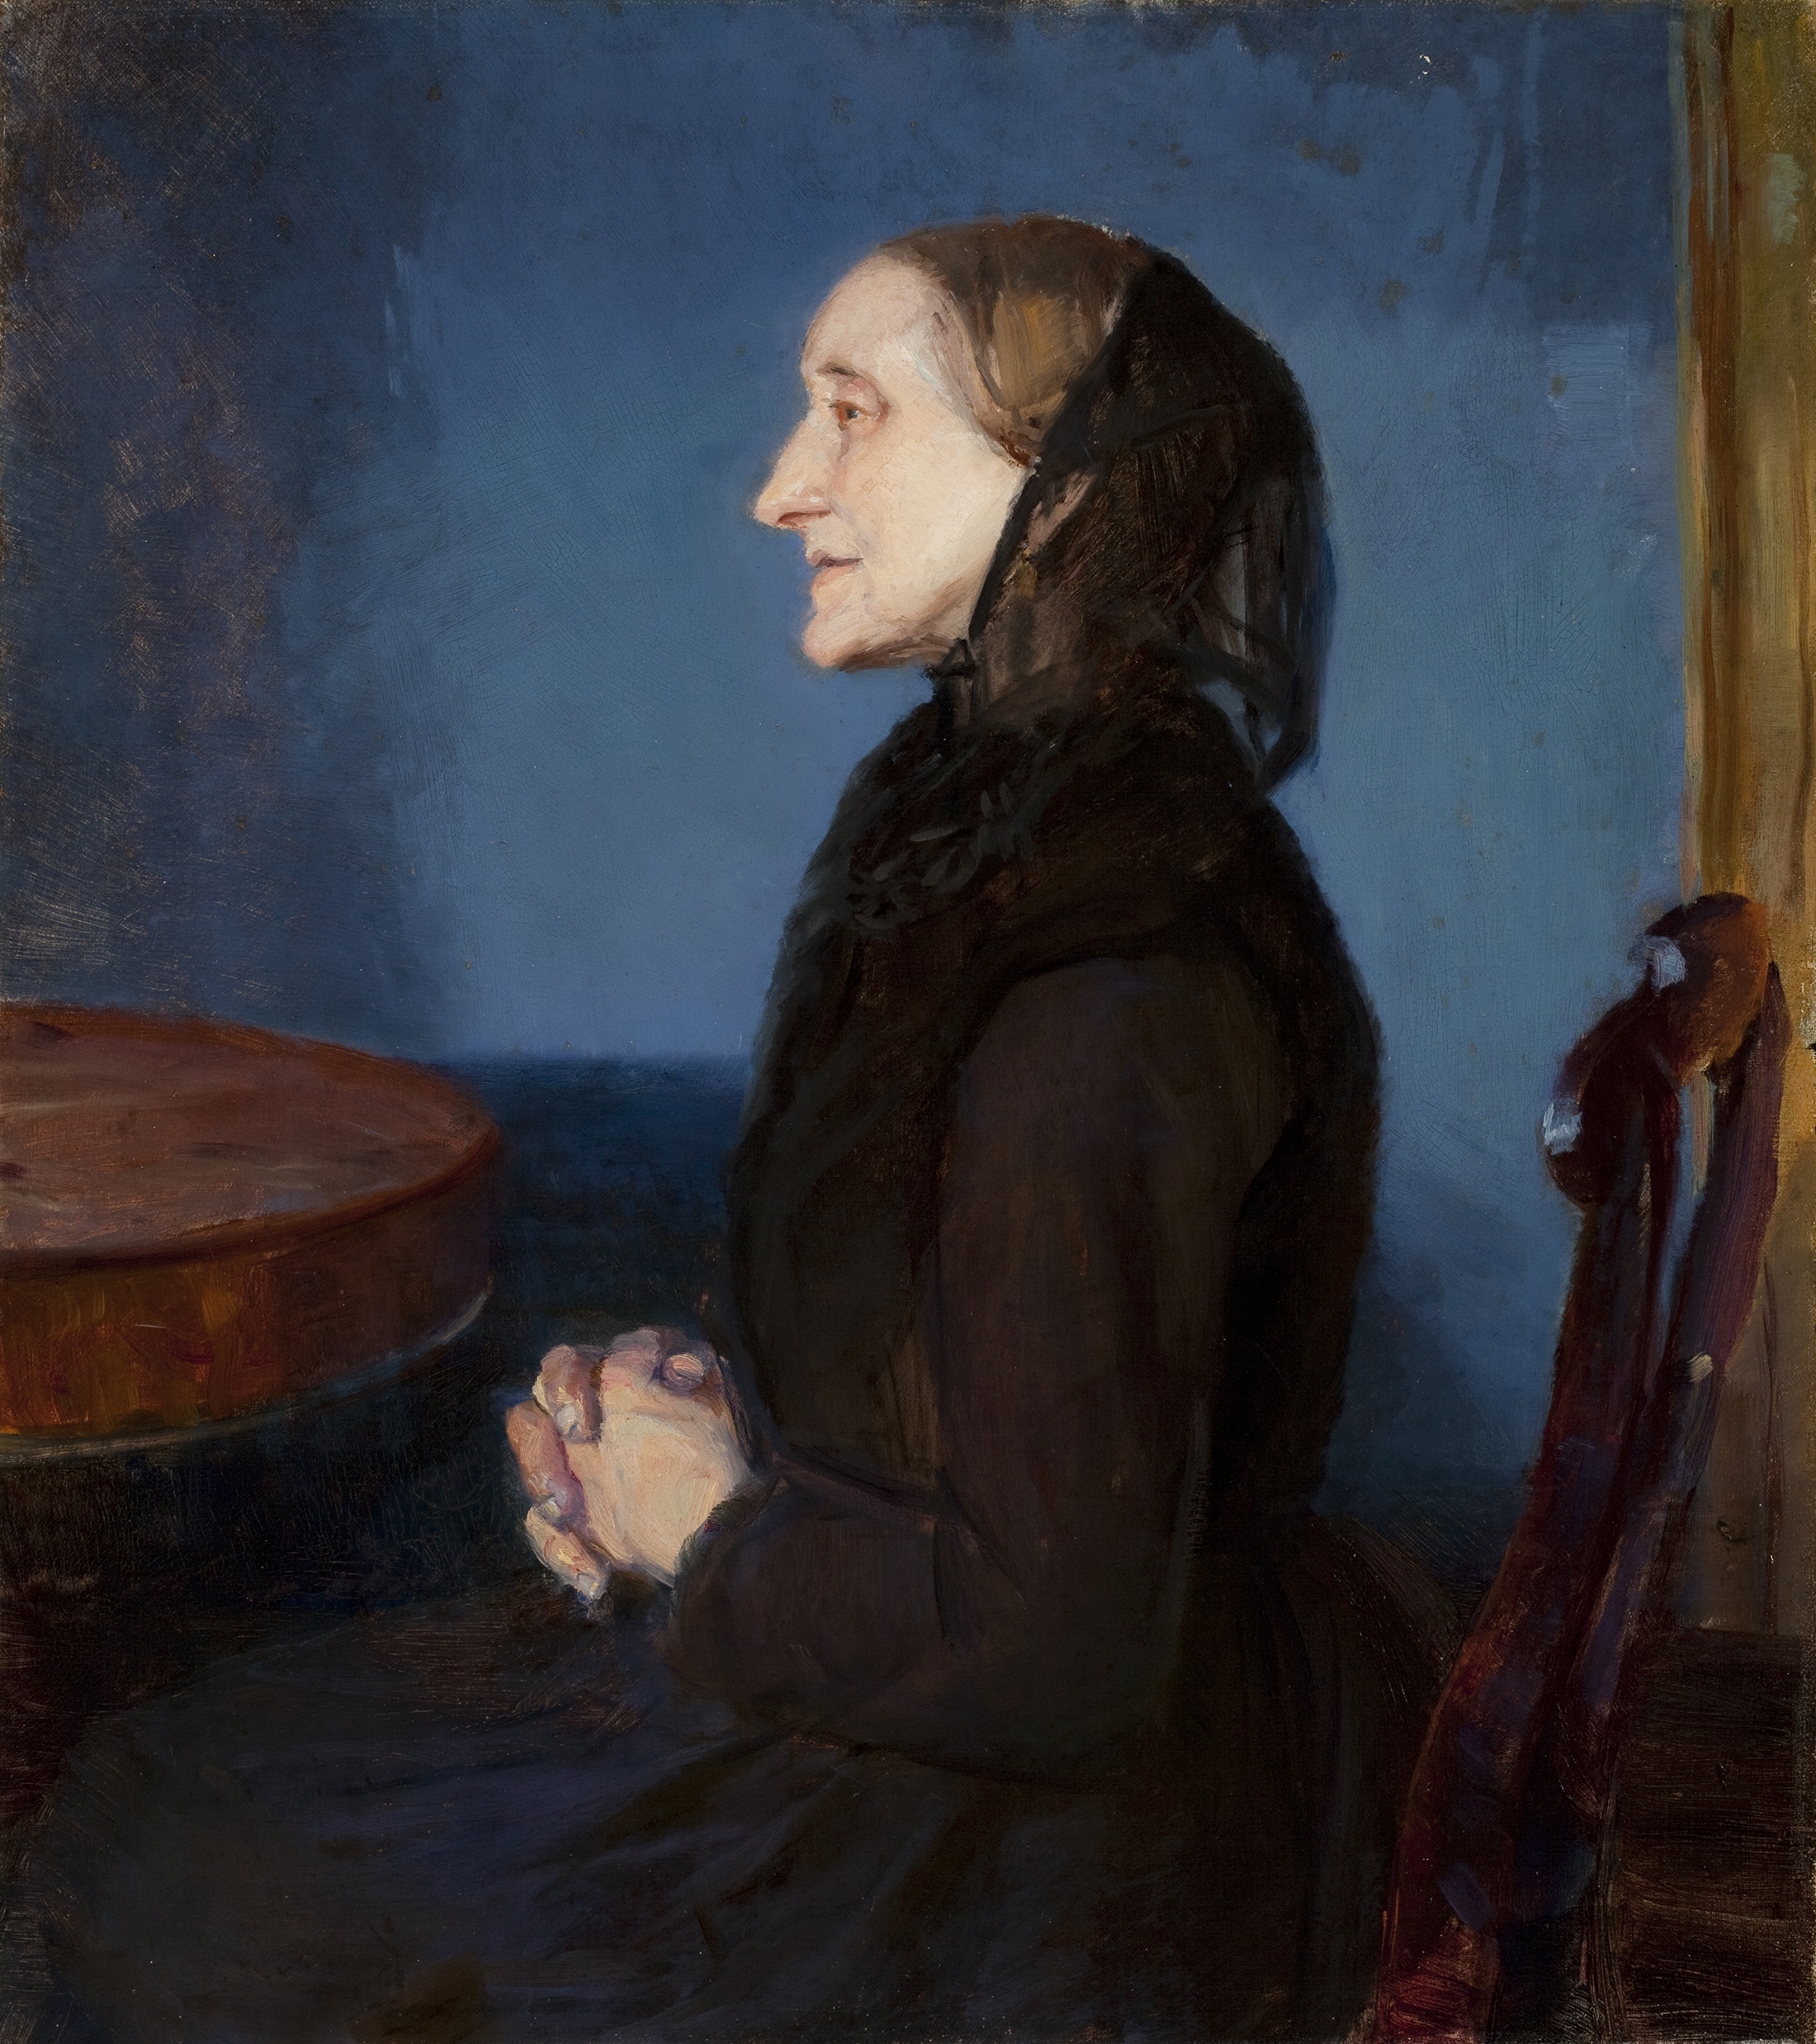 Portret van Ane Hedvig Brøndum by Anna Ancher - 1893 - 67.8 x 59.8 cm Skagens Kunstmuseum